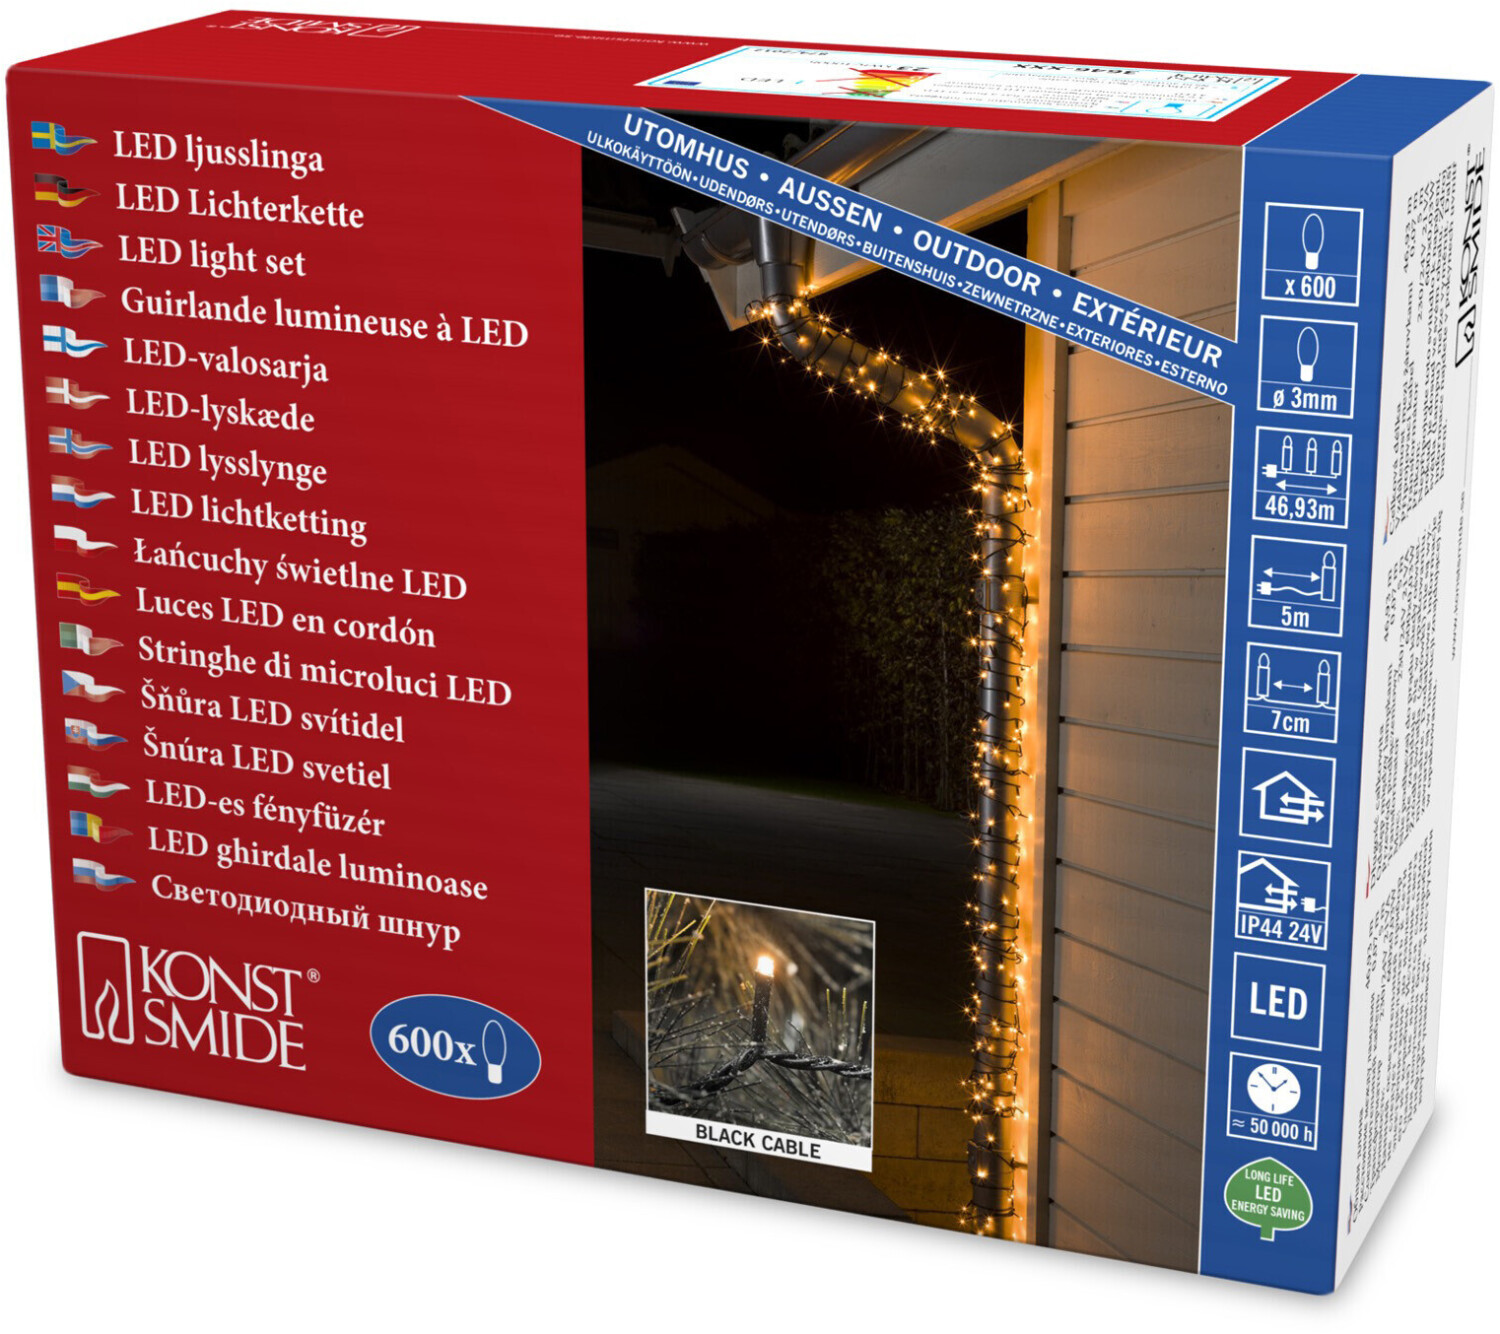 Konstsmide Micro-LED-Lichterkette 41,93m bernstein bei Preisvergleich ab (3646-800) 600er 68,18 € 